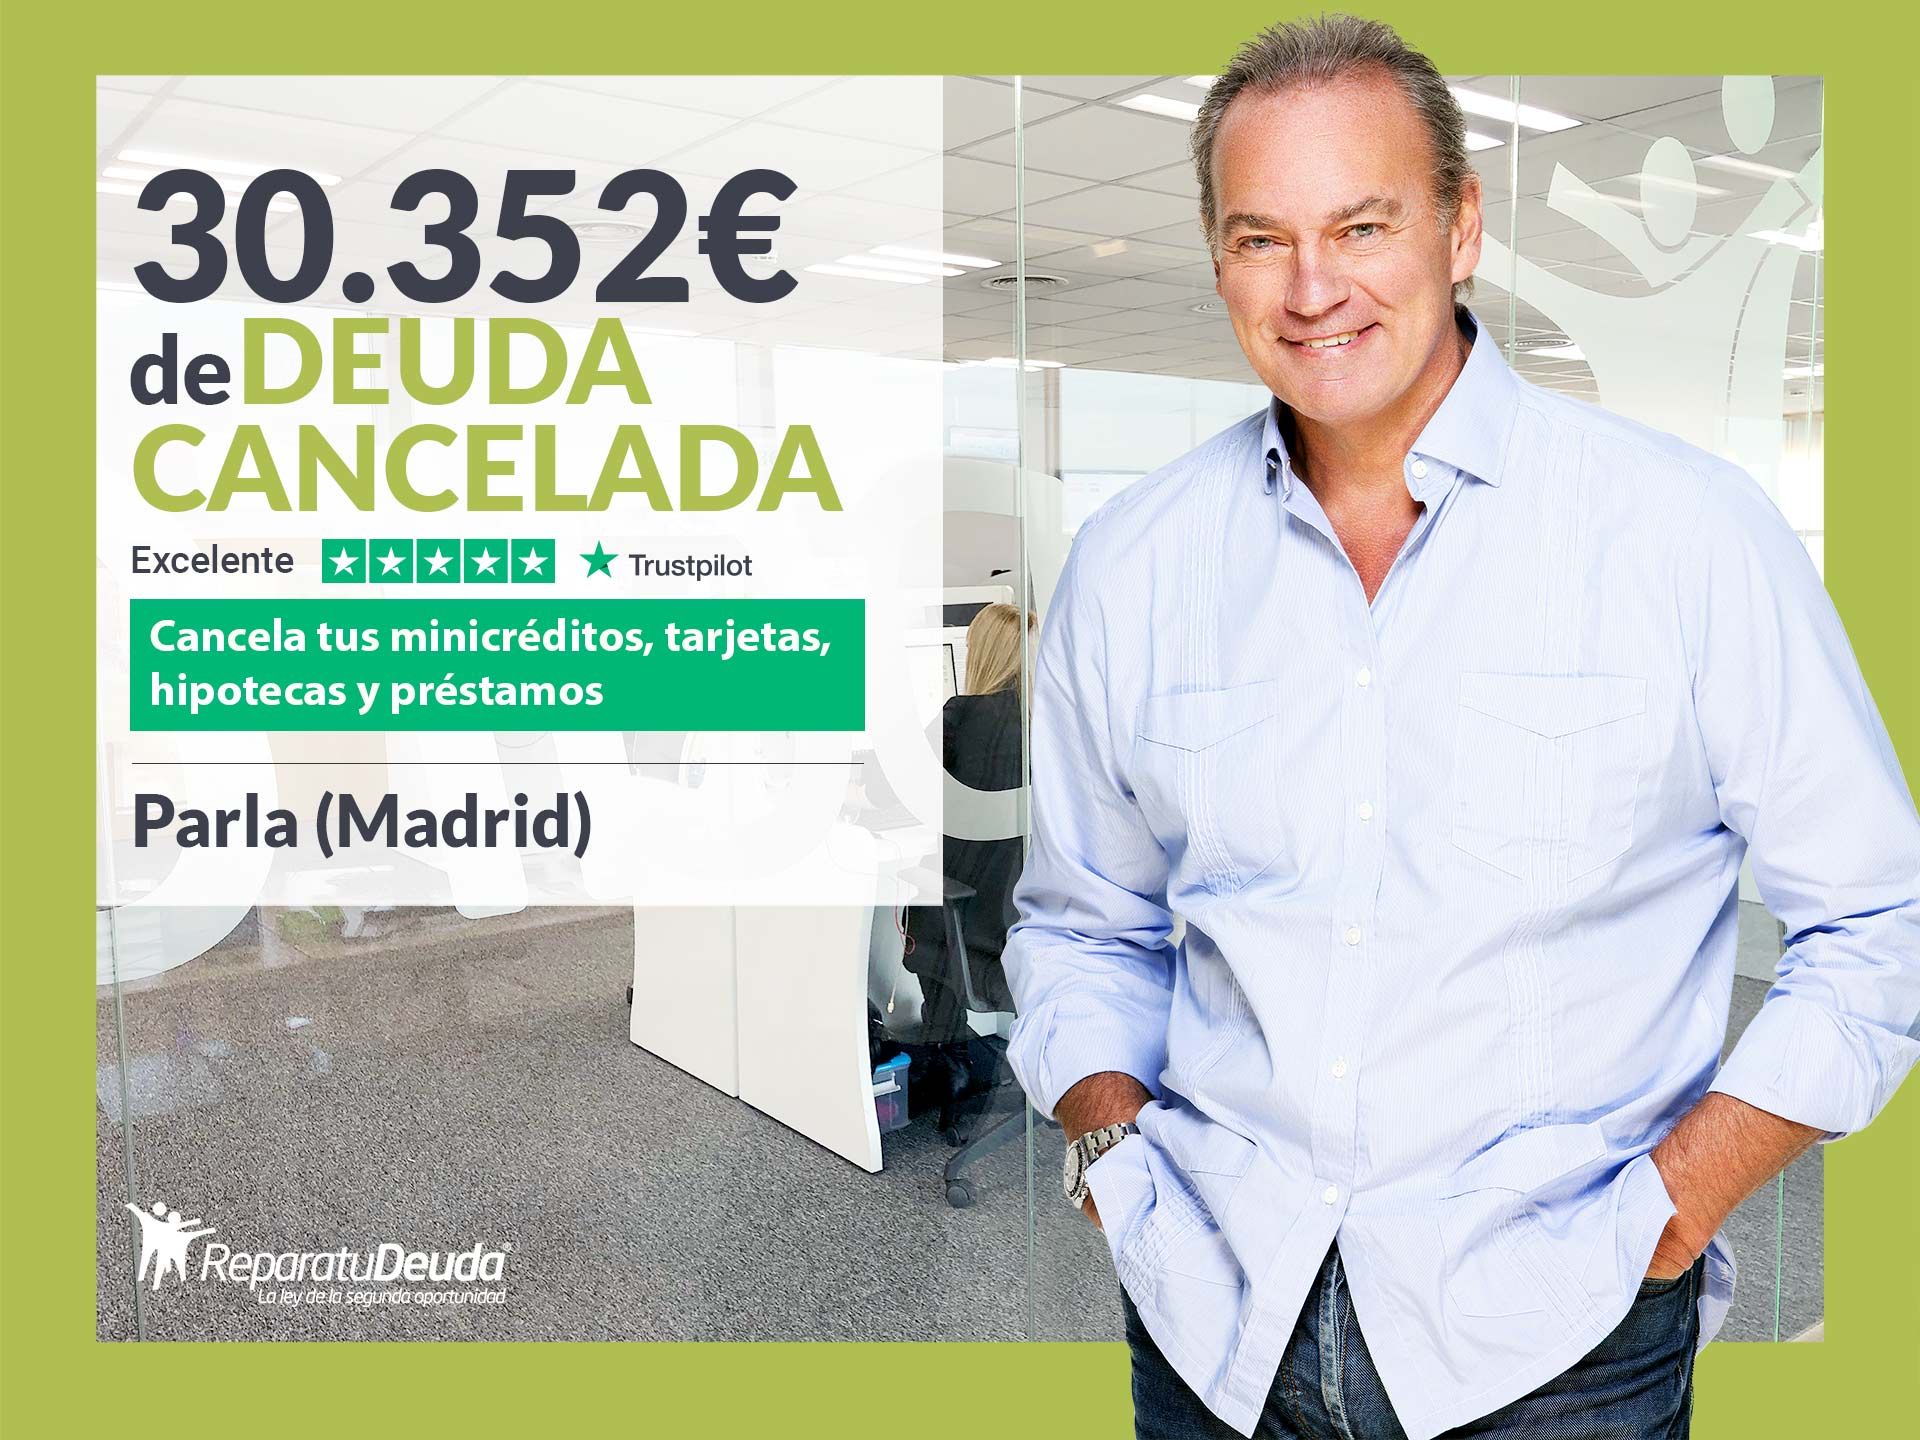 Repara tu Deuda Abogados cancela 30.352? en Parla (Madrid) con la Ley de Segunda Oportunidad